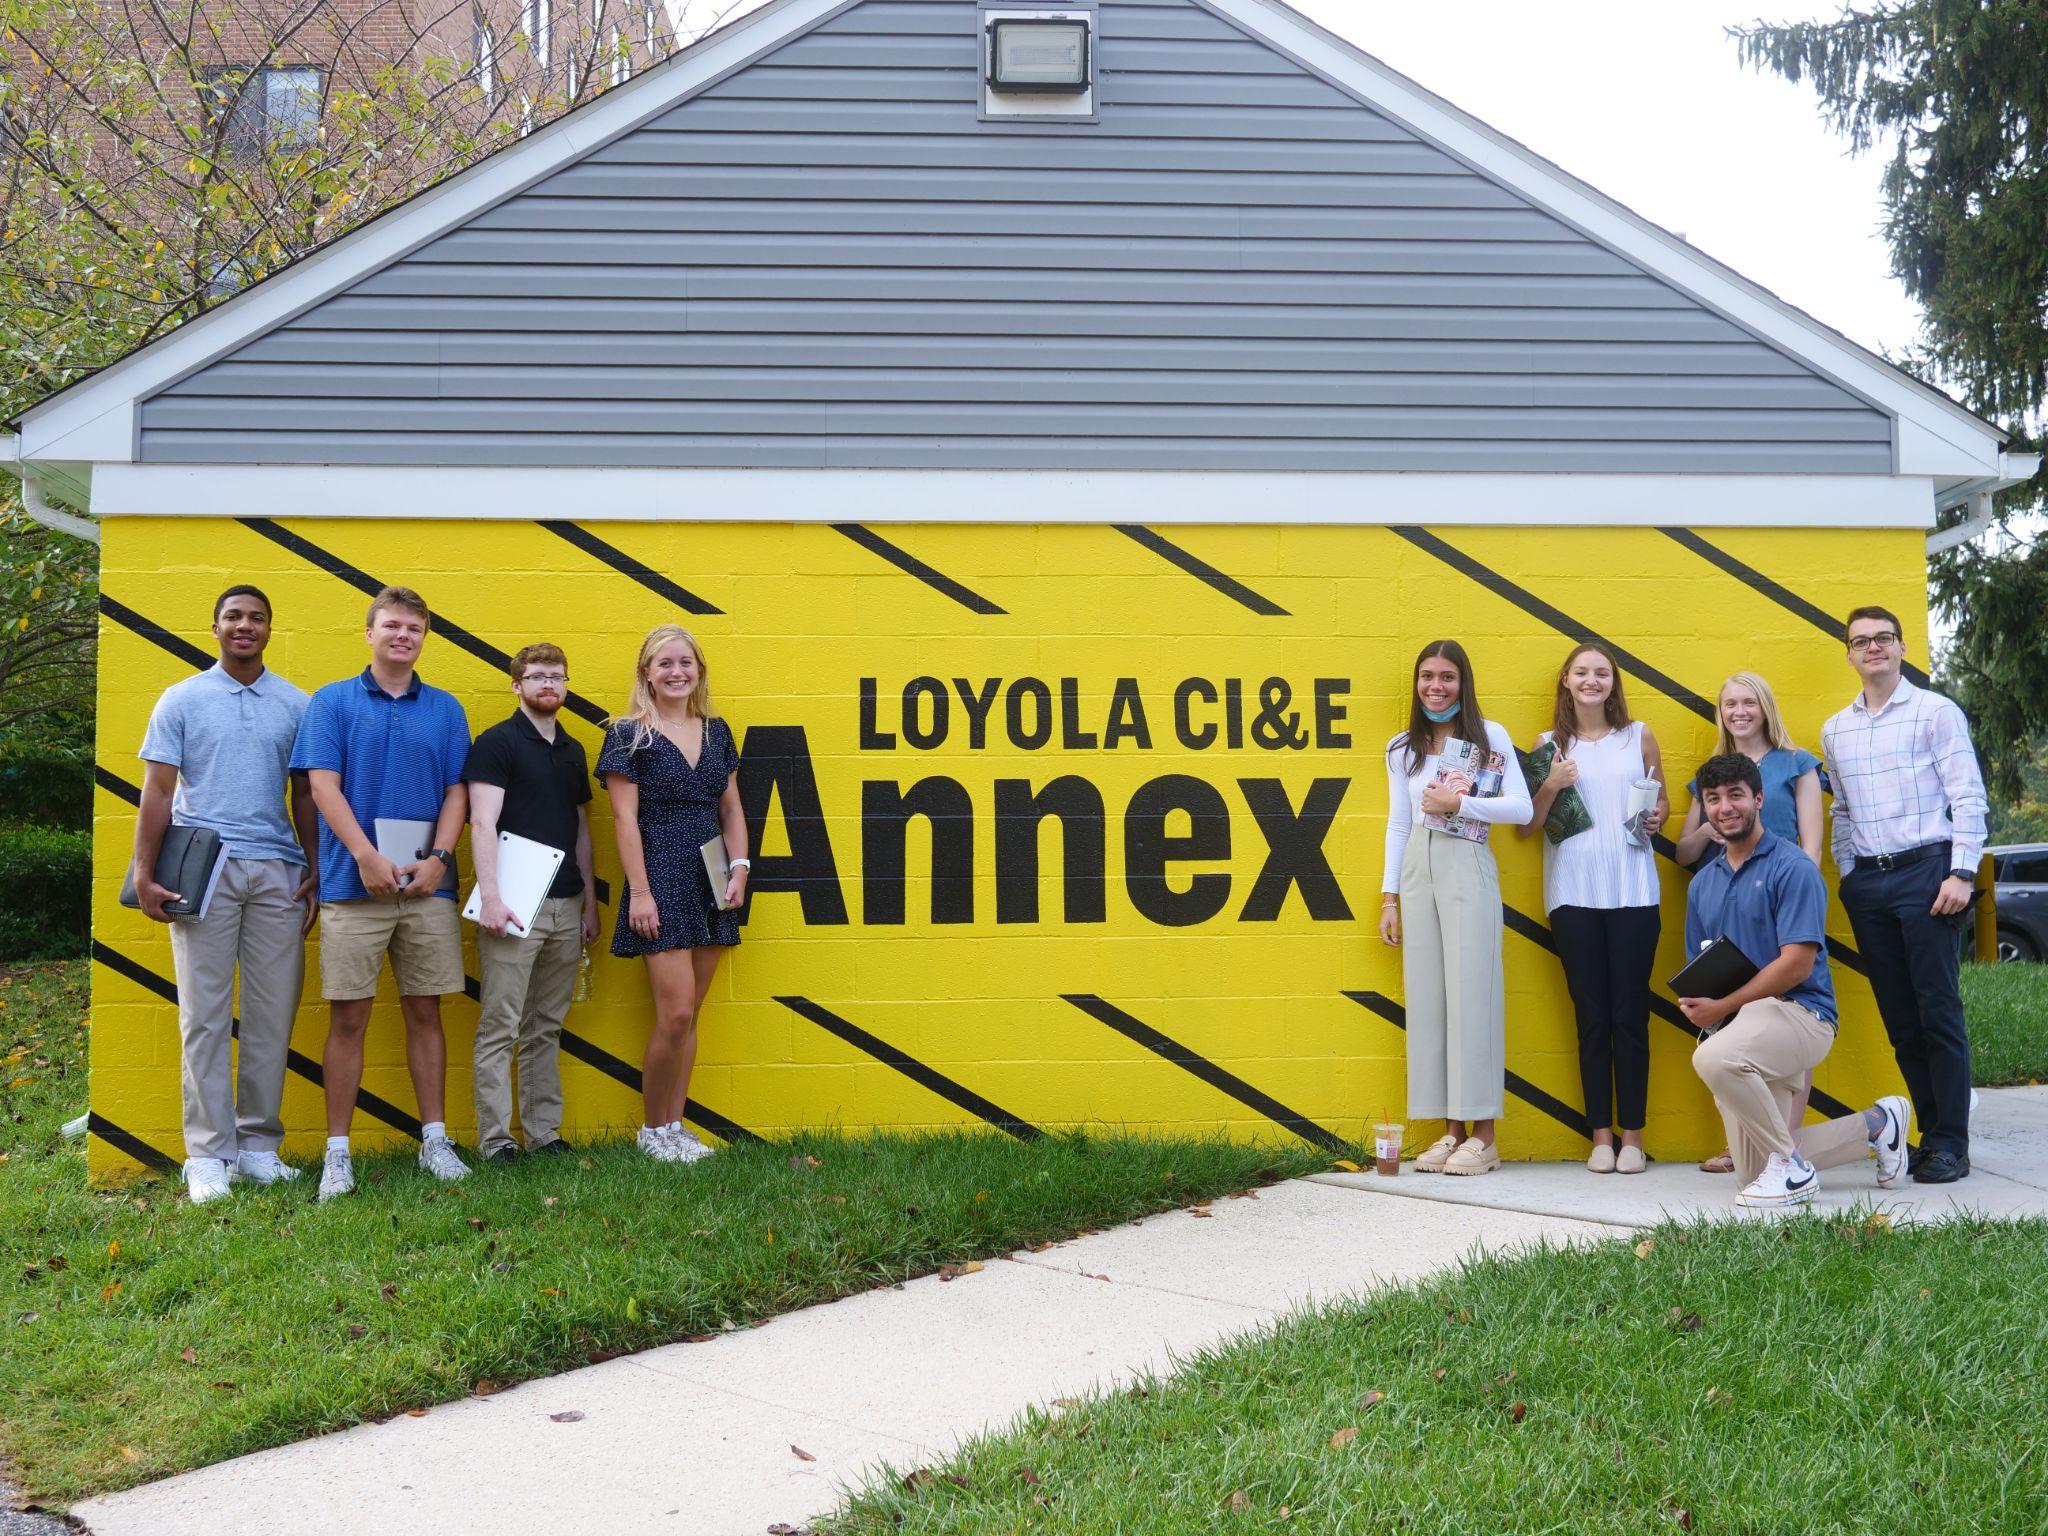 Loyola CI&E Annex